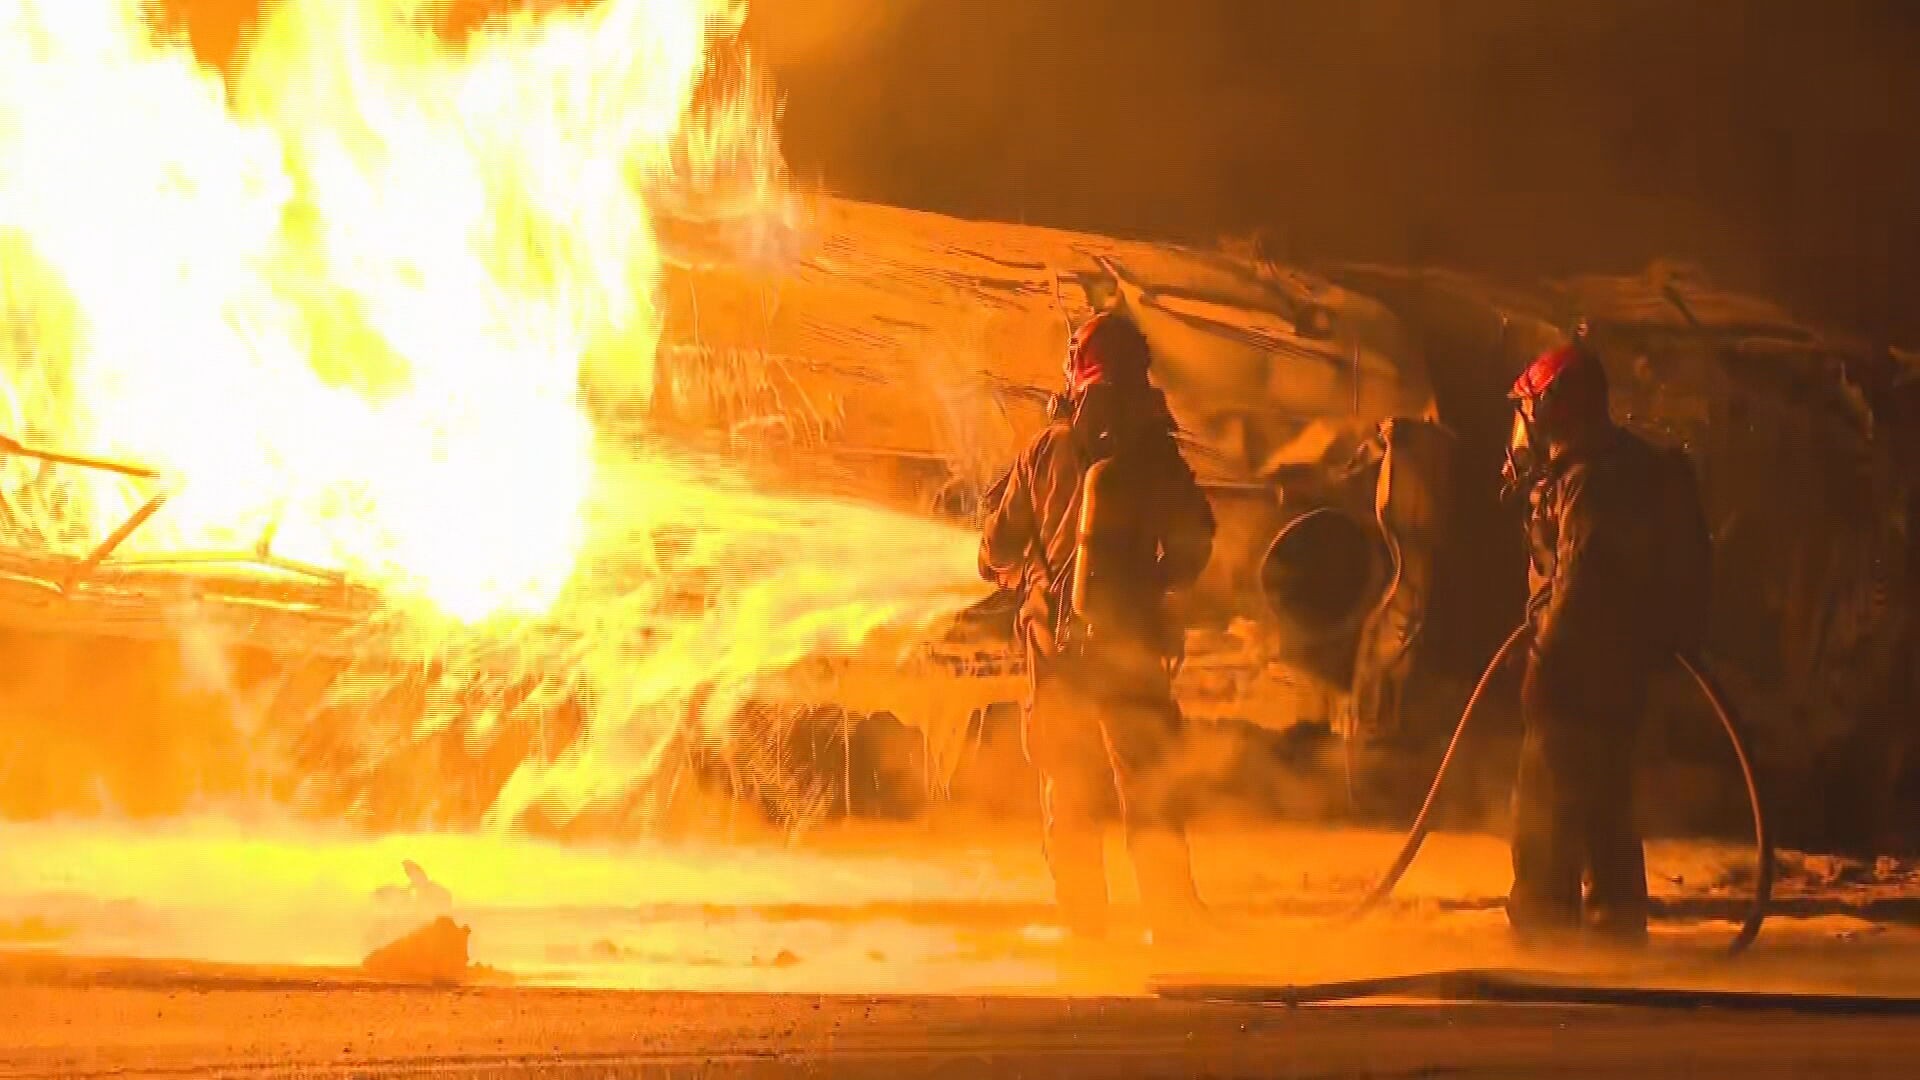 Imagens mostram moradores socorrendo vítimas de incêndio após caminhão tombar em BH